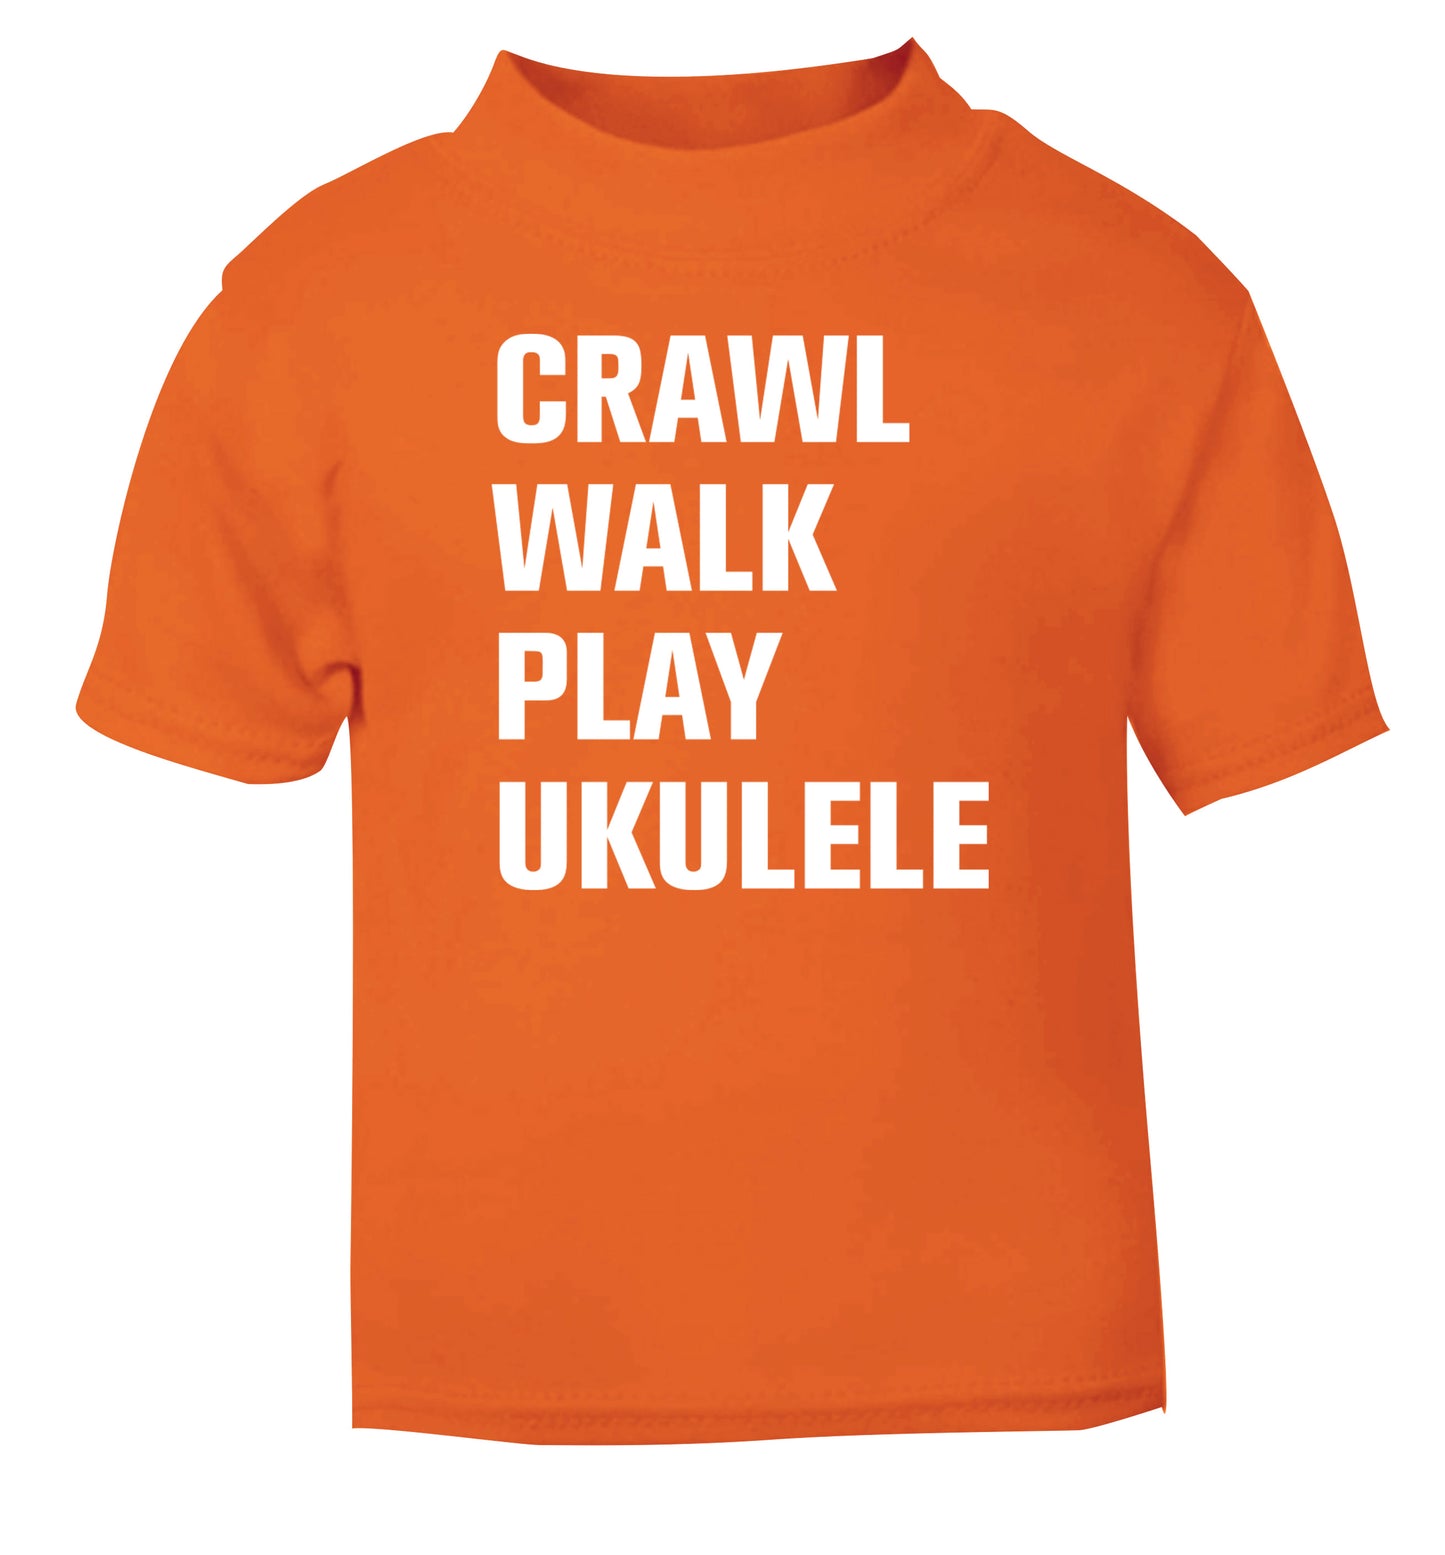 Crawl walk play ukulele orange Baby Toddler Tshirt 2 Years